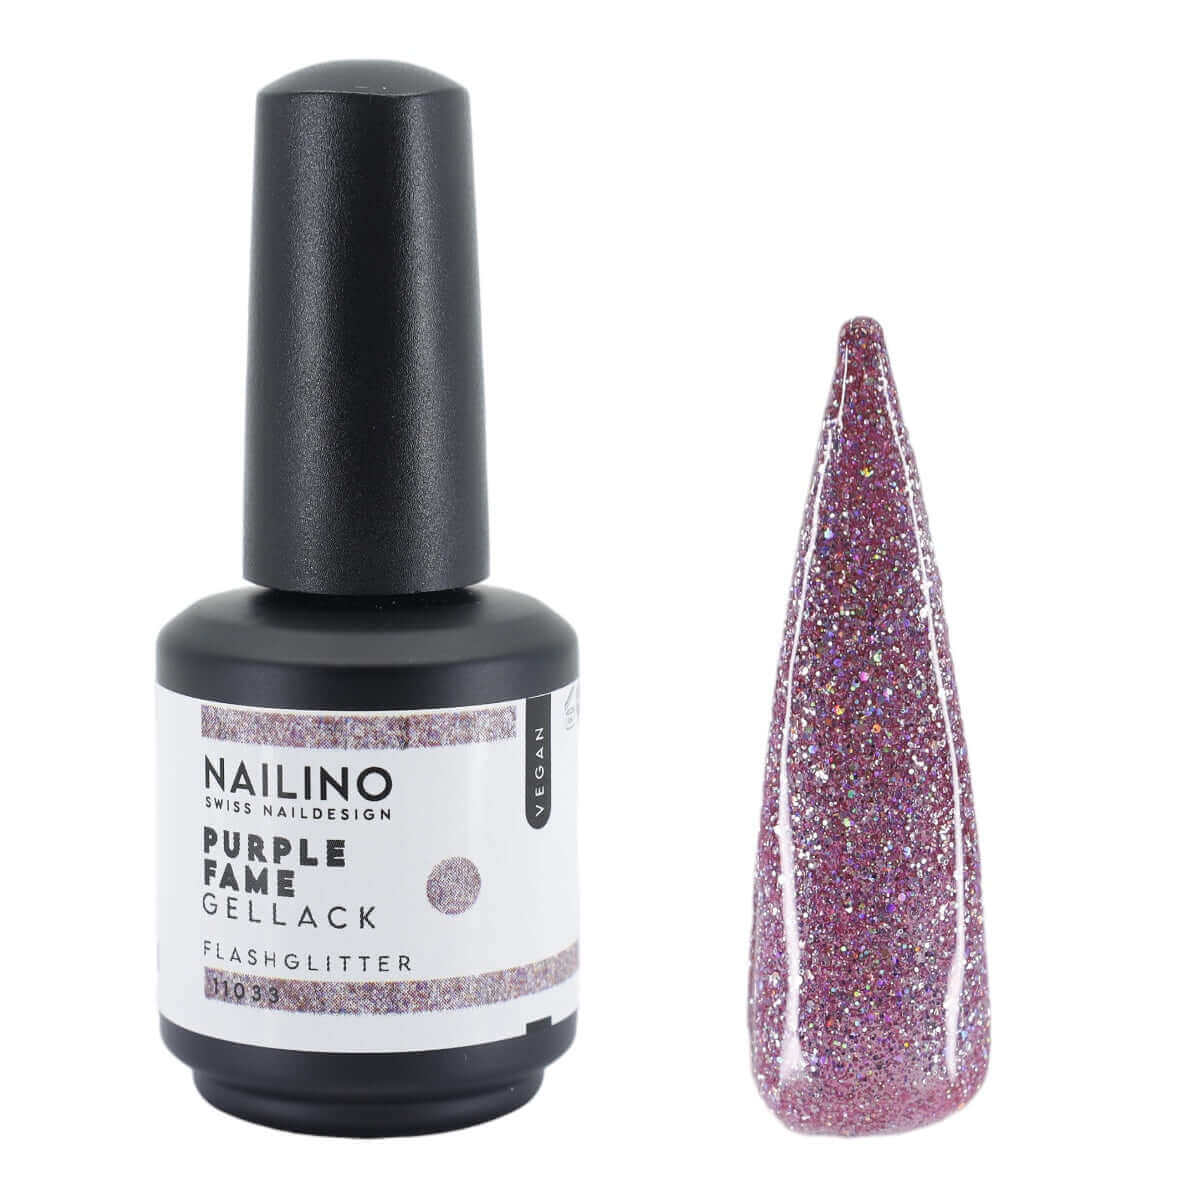 NAILINO Shellac Purple Fame -